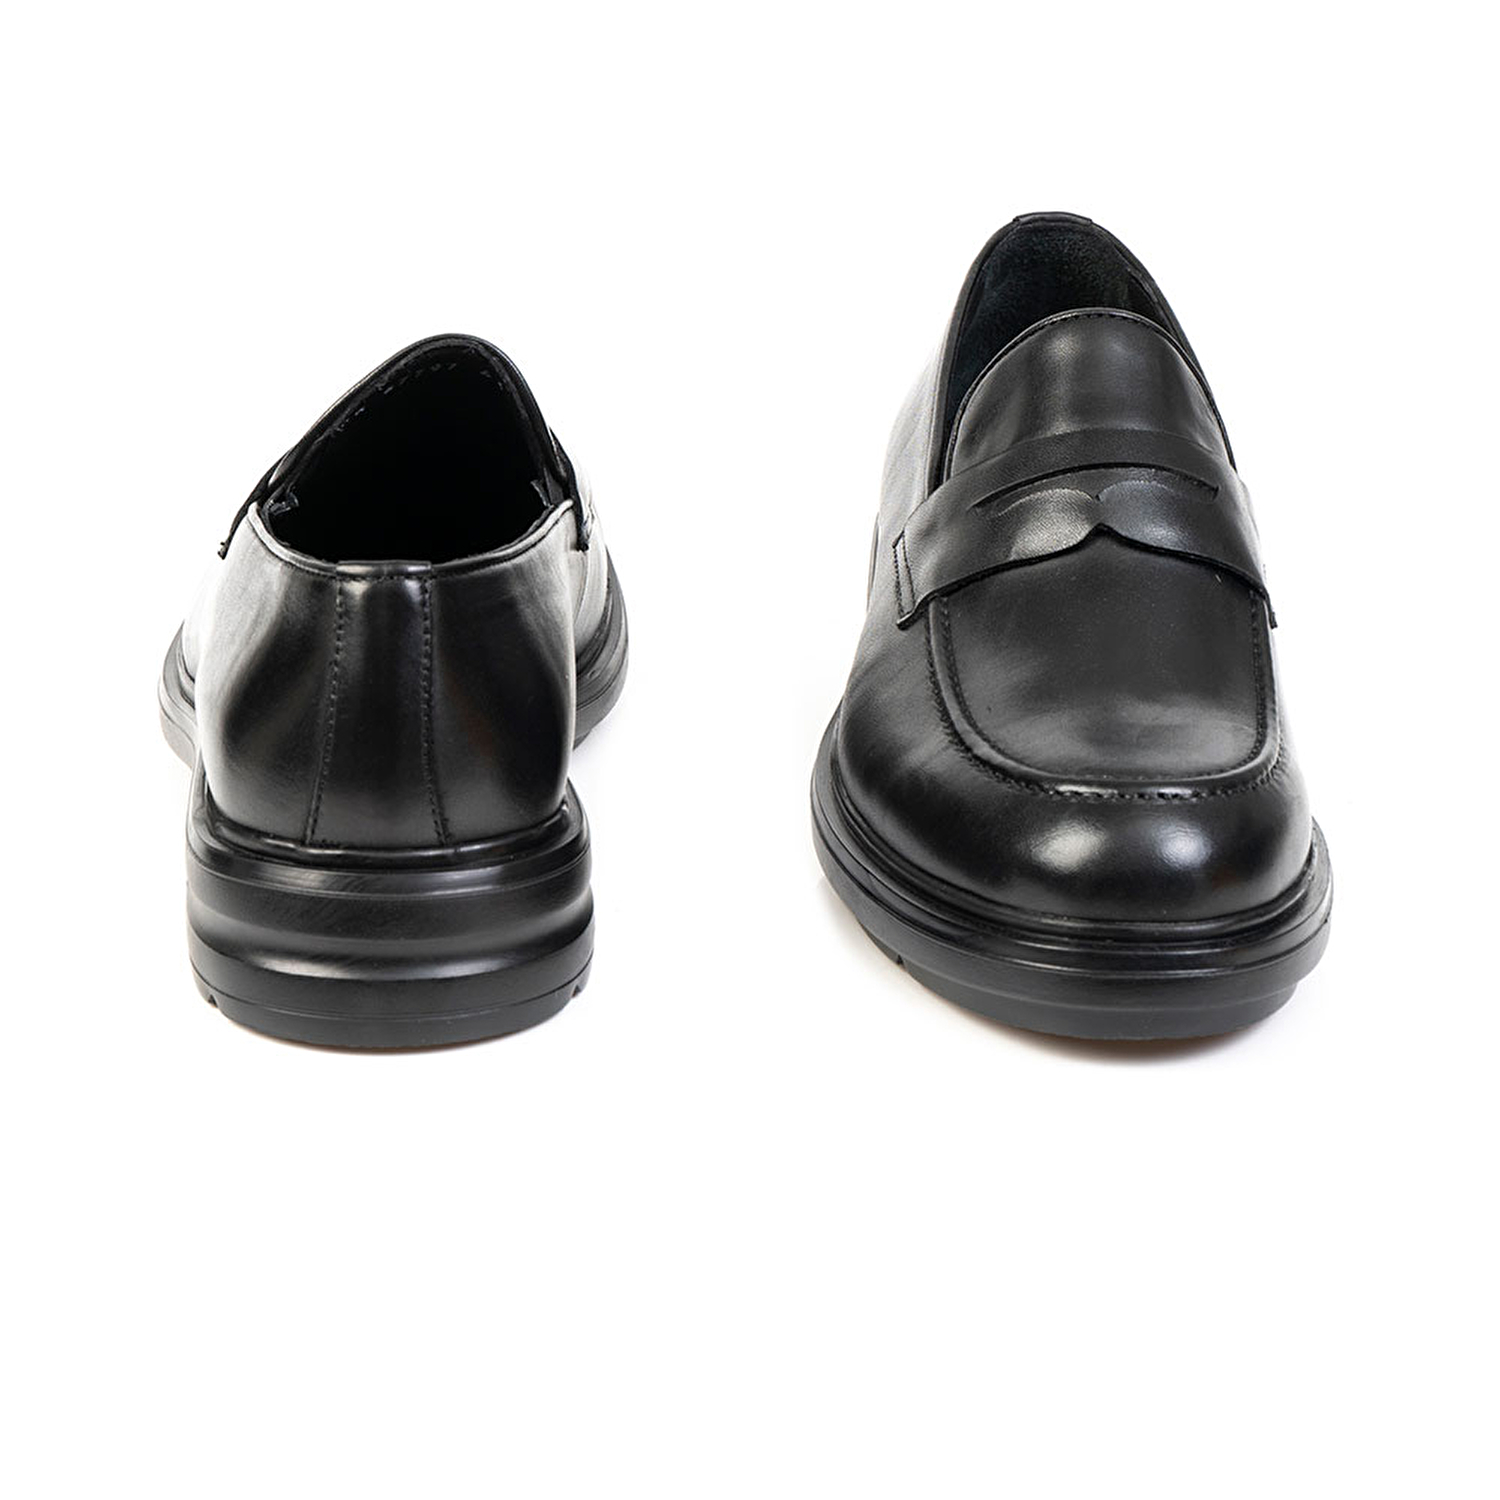 Klasik Erkek Ayakkabı Siyah Deri 67797-4